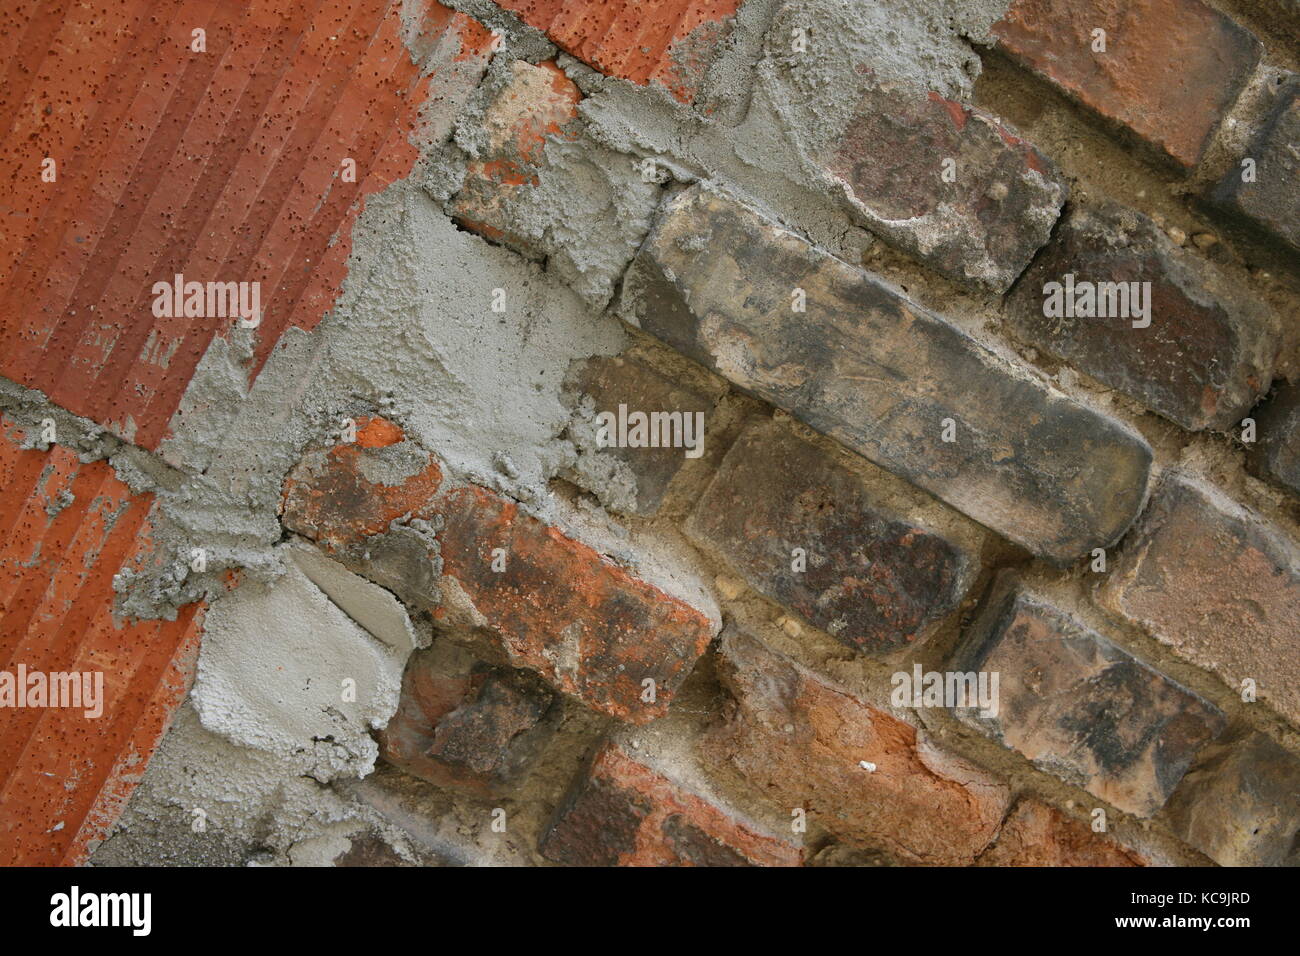 Mauer mit unterschiedlichen Steinen - Wand mit verschiedenen Steinen Stockfoto